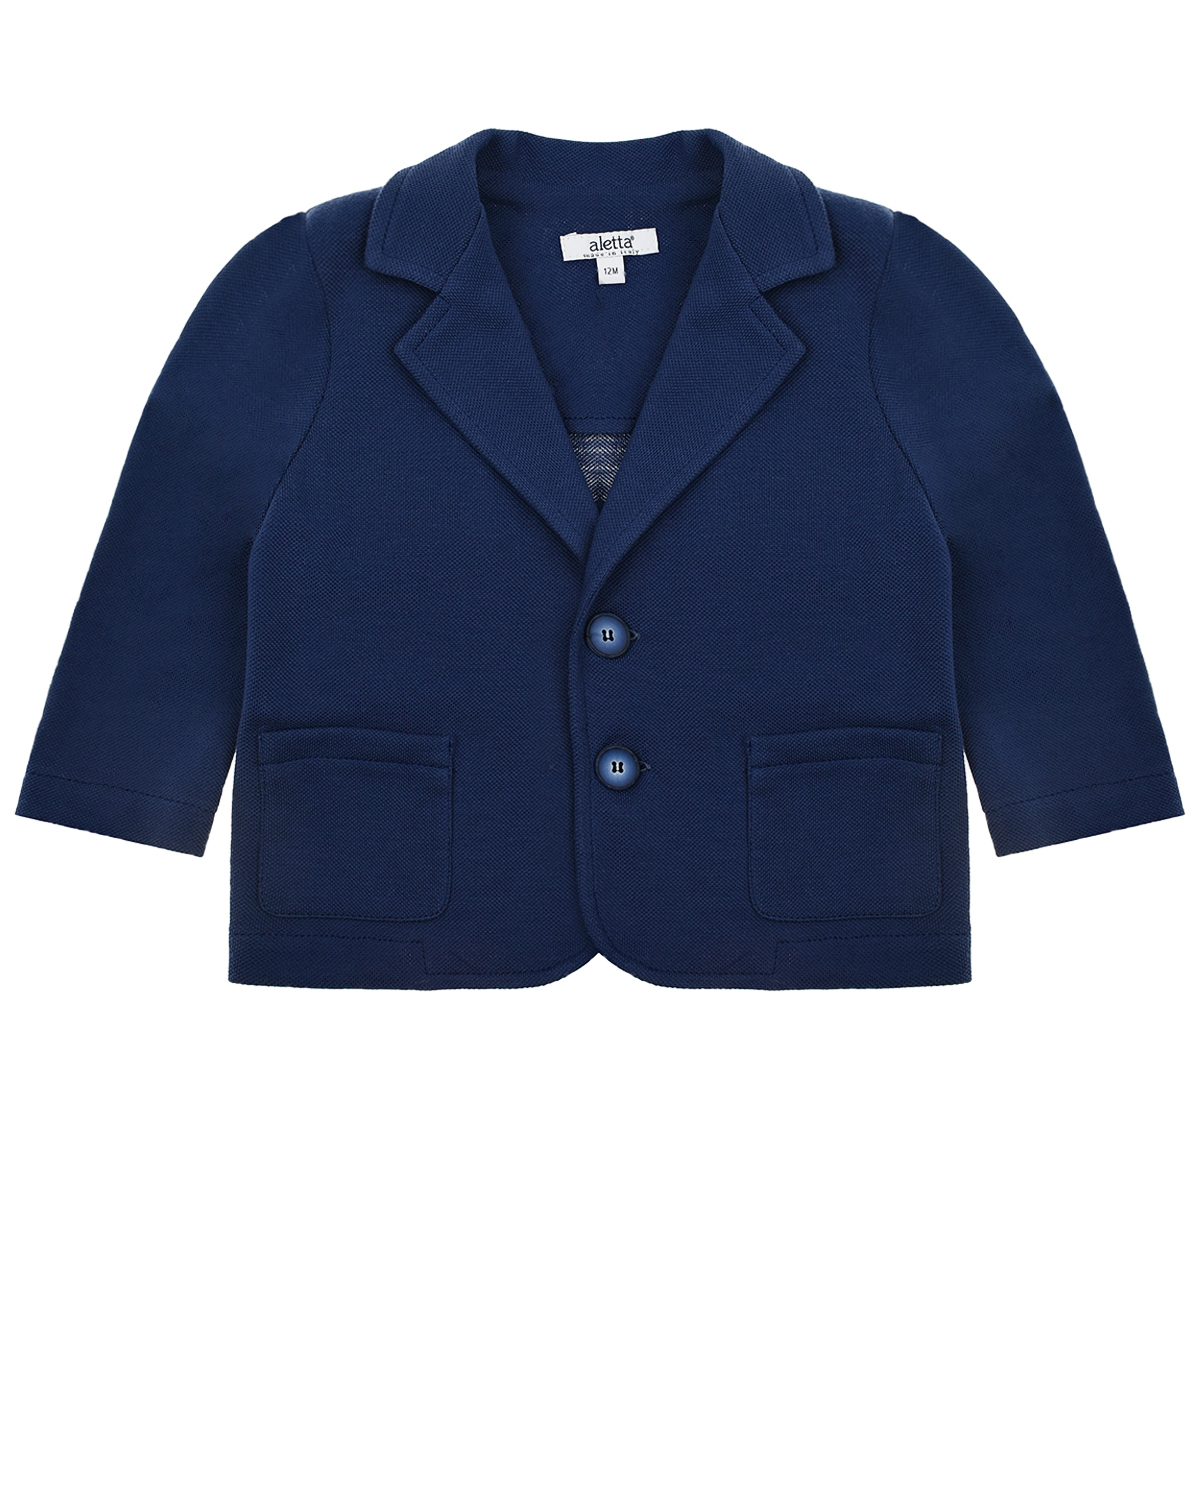 Синий пиджак с накладными карманами Aletta детский, размер 80